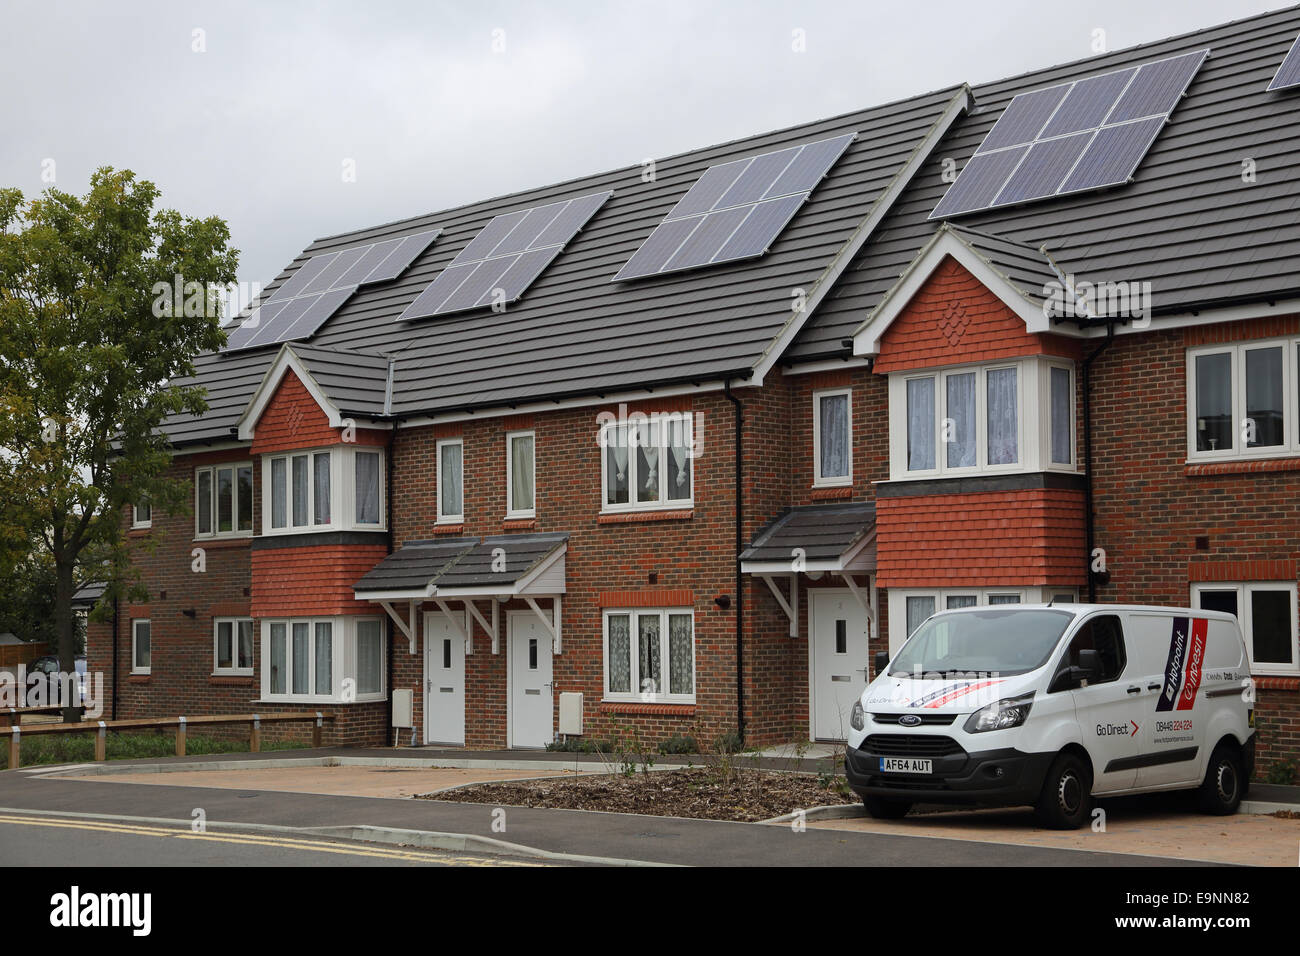 Un nuevo conjunto de viviendas con paneles de energía solar fotovoltaica instalada en el techo agudo Foto de stock